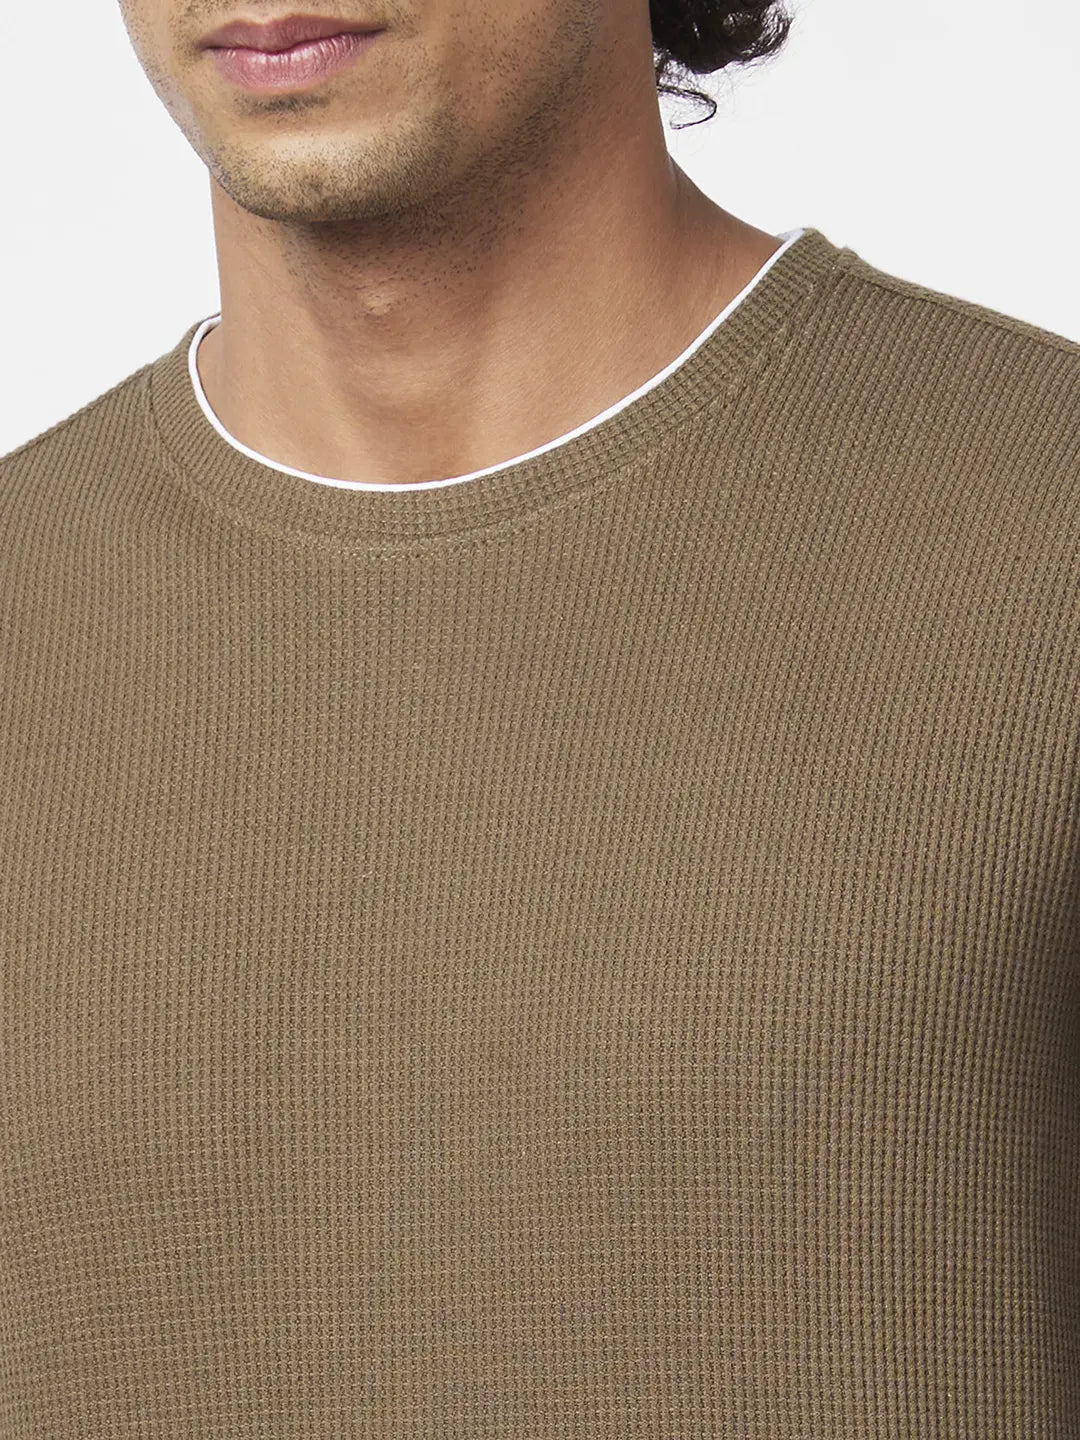 Spykar Men Military Green Blended Slim Fit Full Sleeve Round Neck Plain Sweatshirt